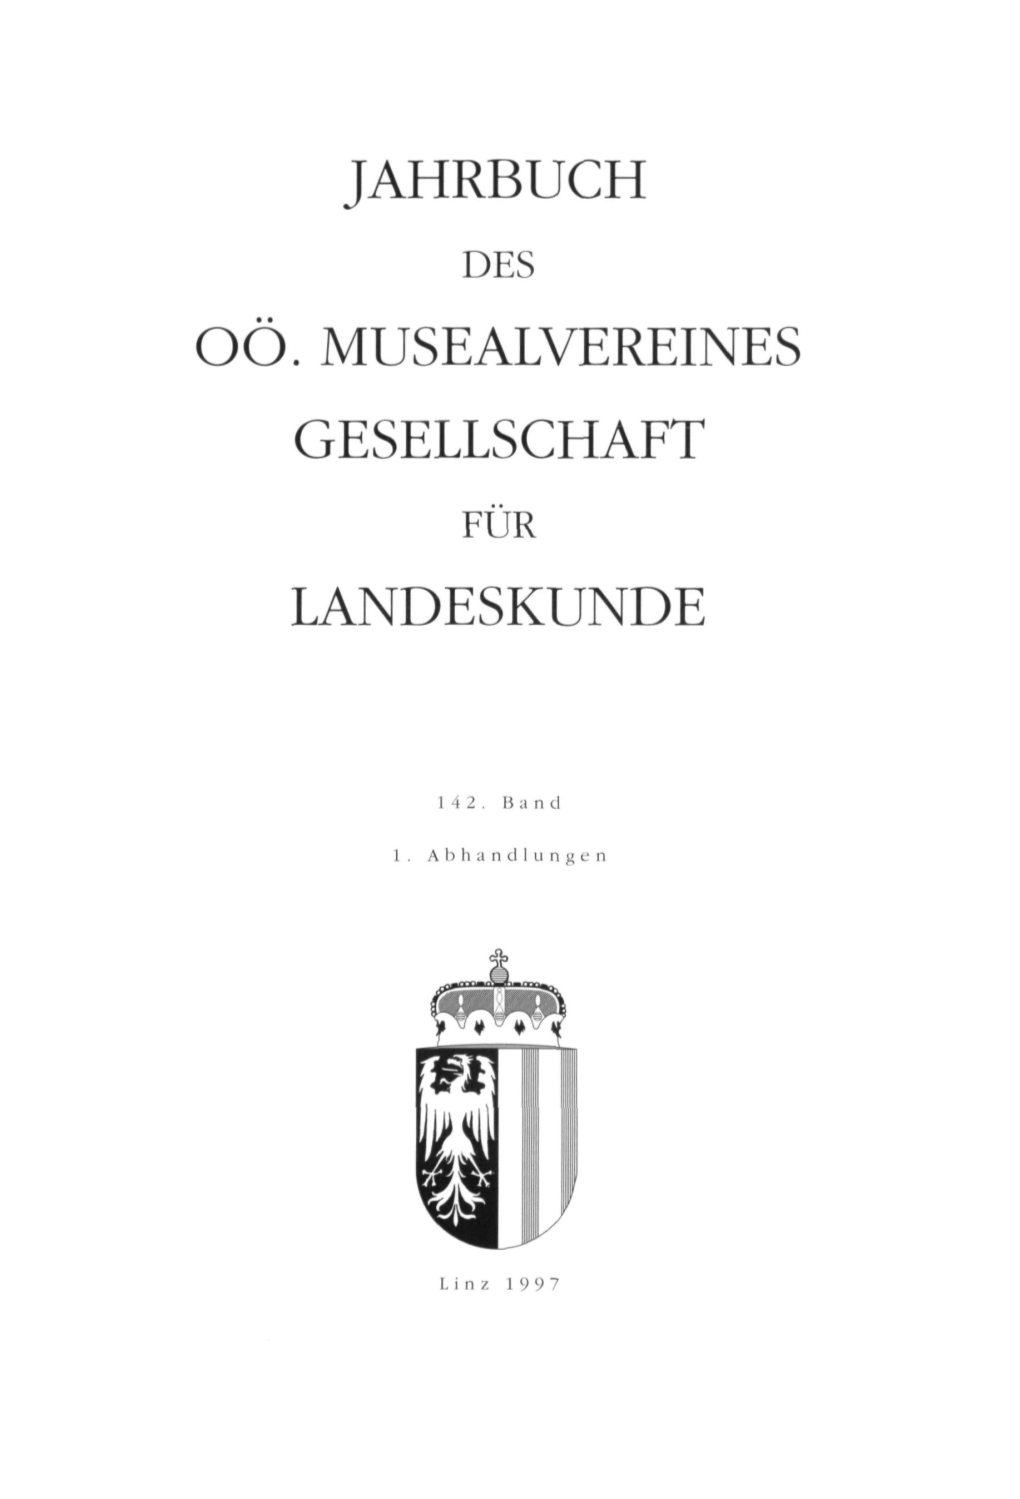 Jahrbuch Oö. Musealvereines Gesellschaft Landeskunde